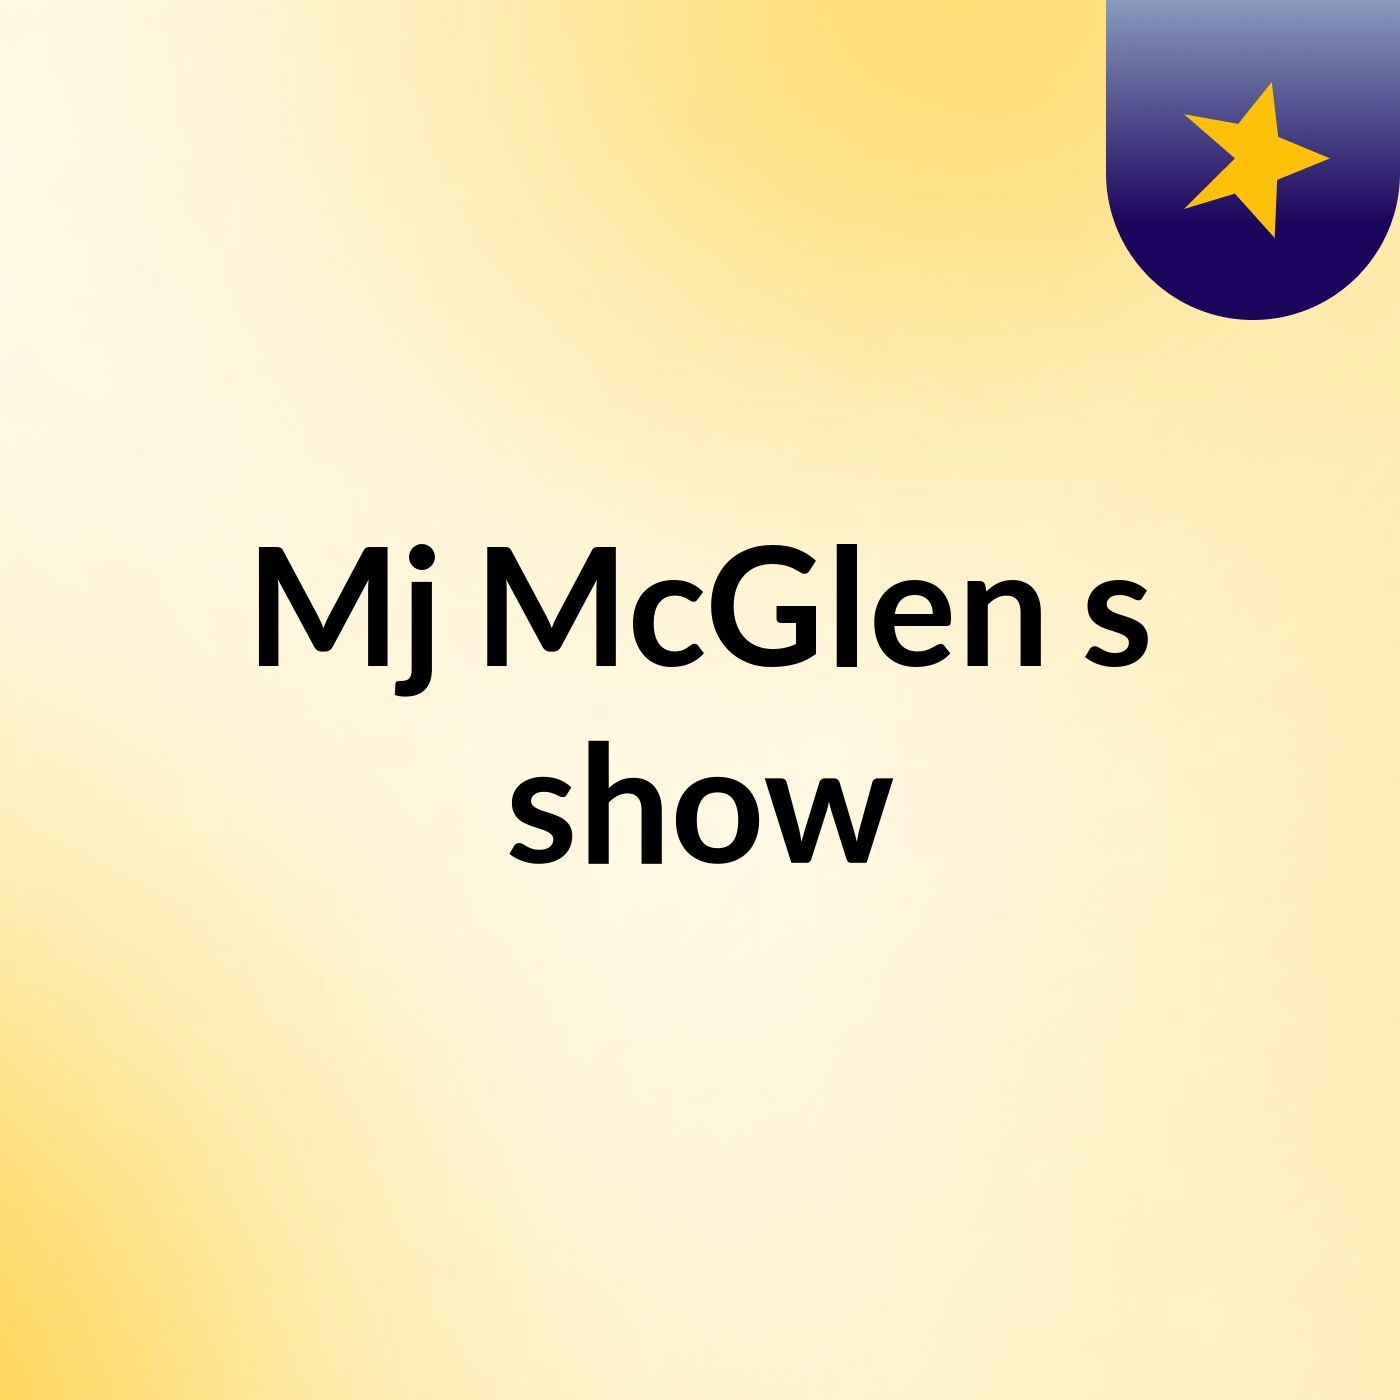 Episode 4 - Mj McGlen's show